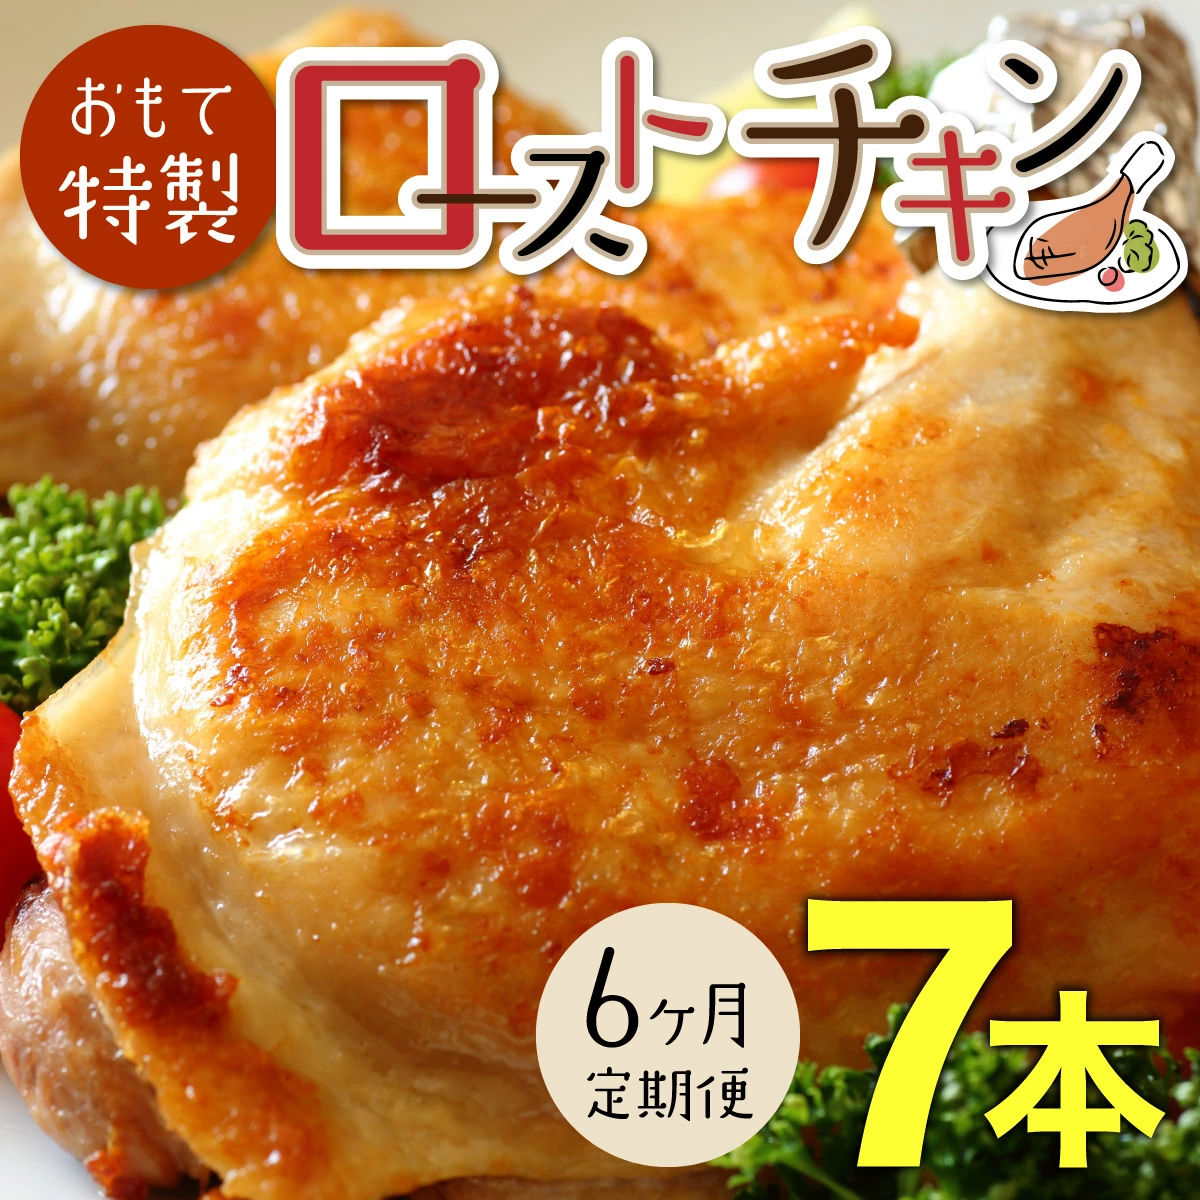 【6か月定期便】おもて特製 ローストチキン 7本 北海道 岩内町 鶏肉 チキンレッグ 簡単調理 おつまみ F21H-551